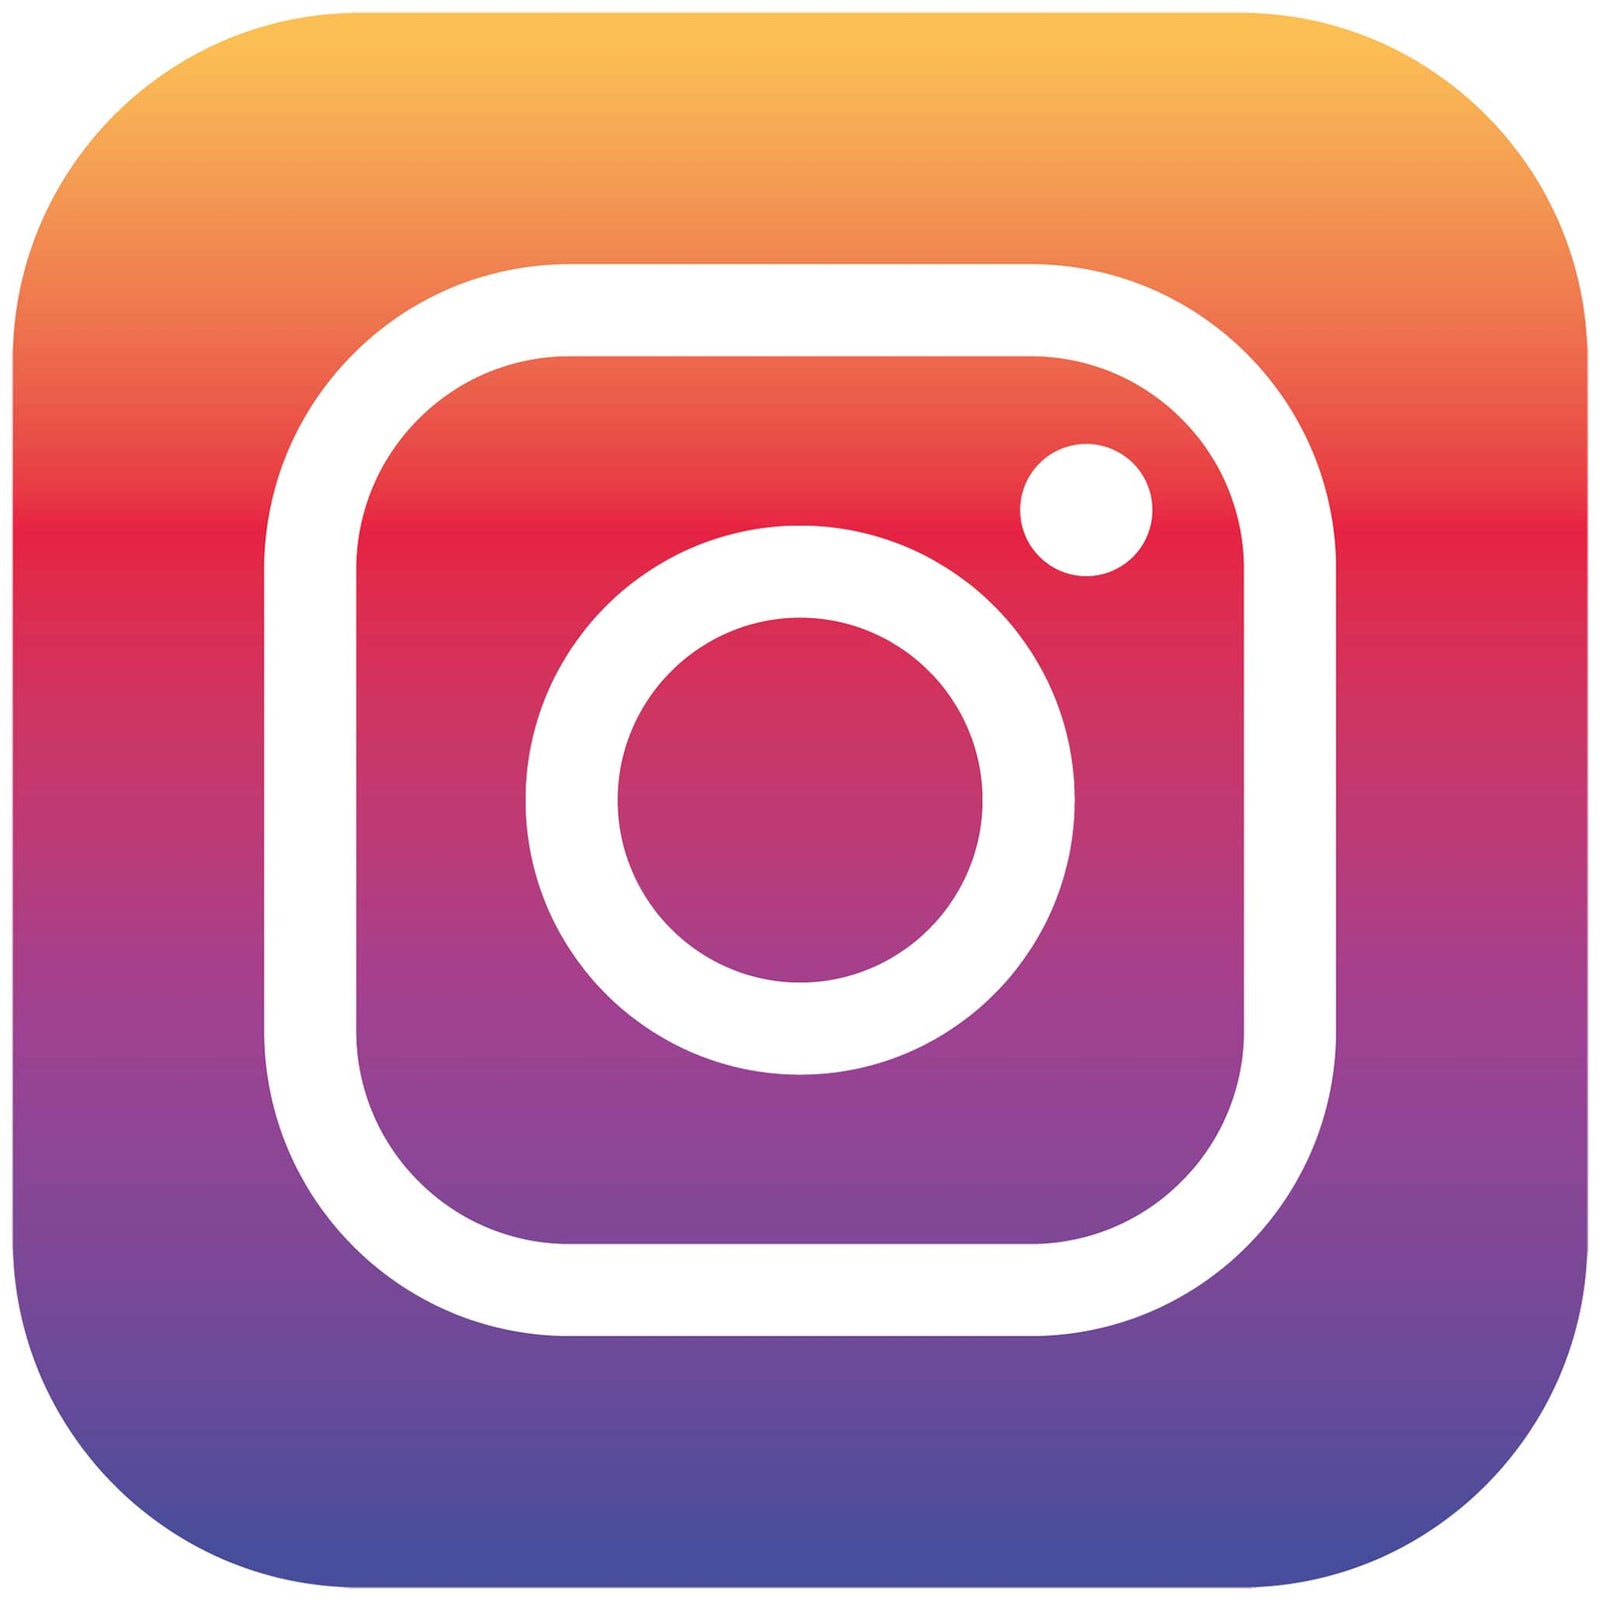 Icona dell'app di Instagram per permettere ai clienti di contattarmi su Instagram